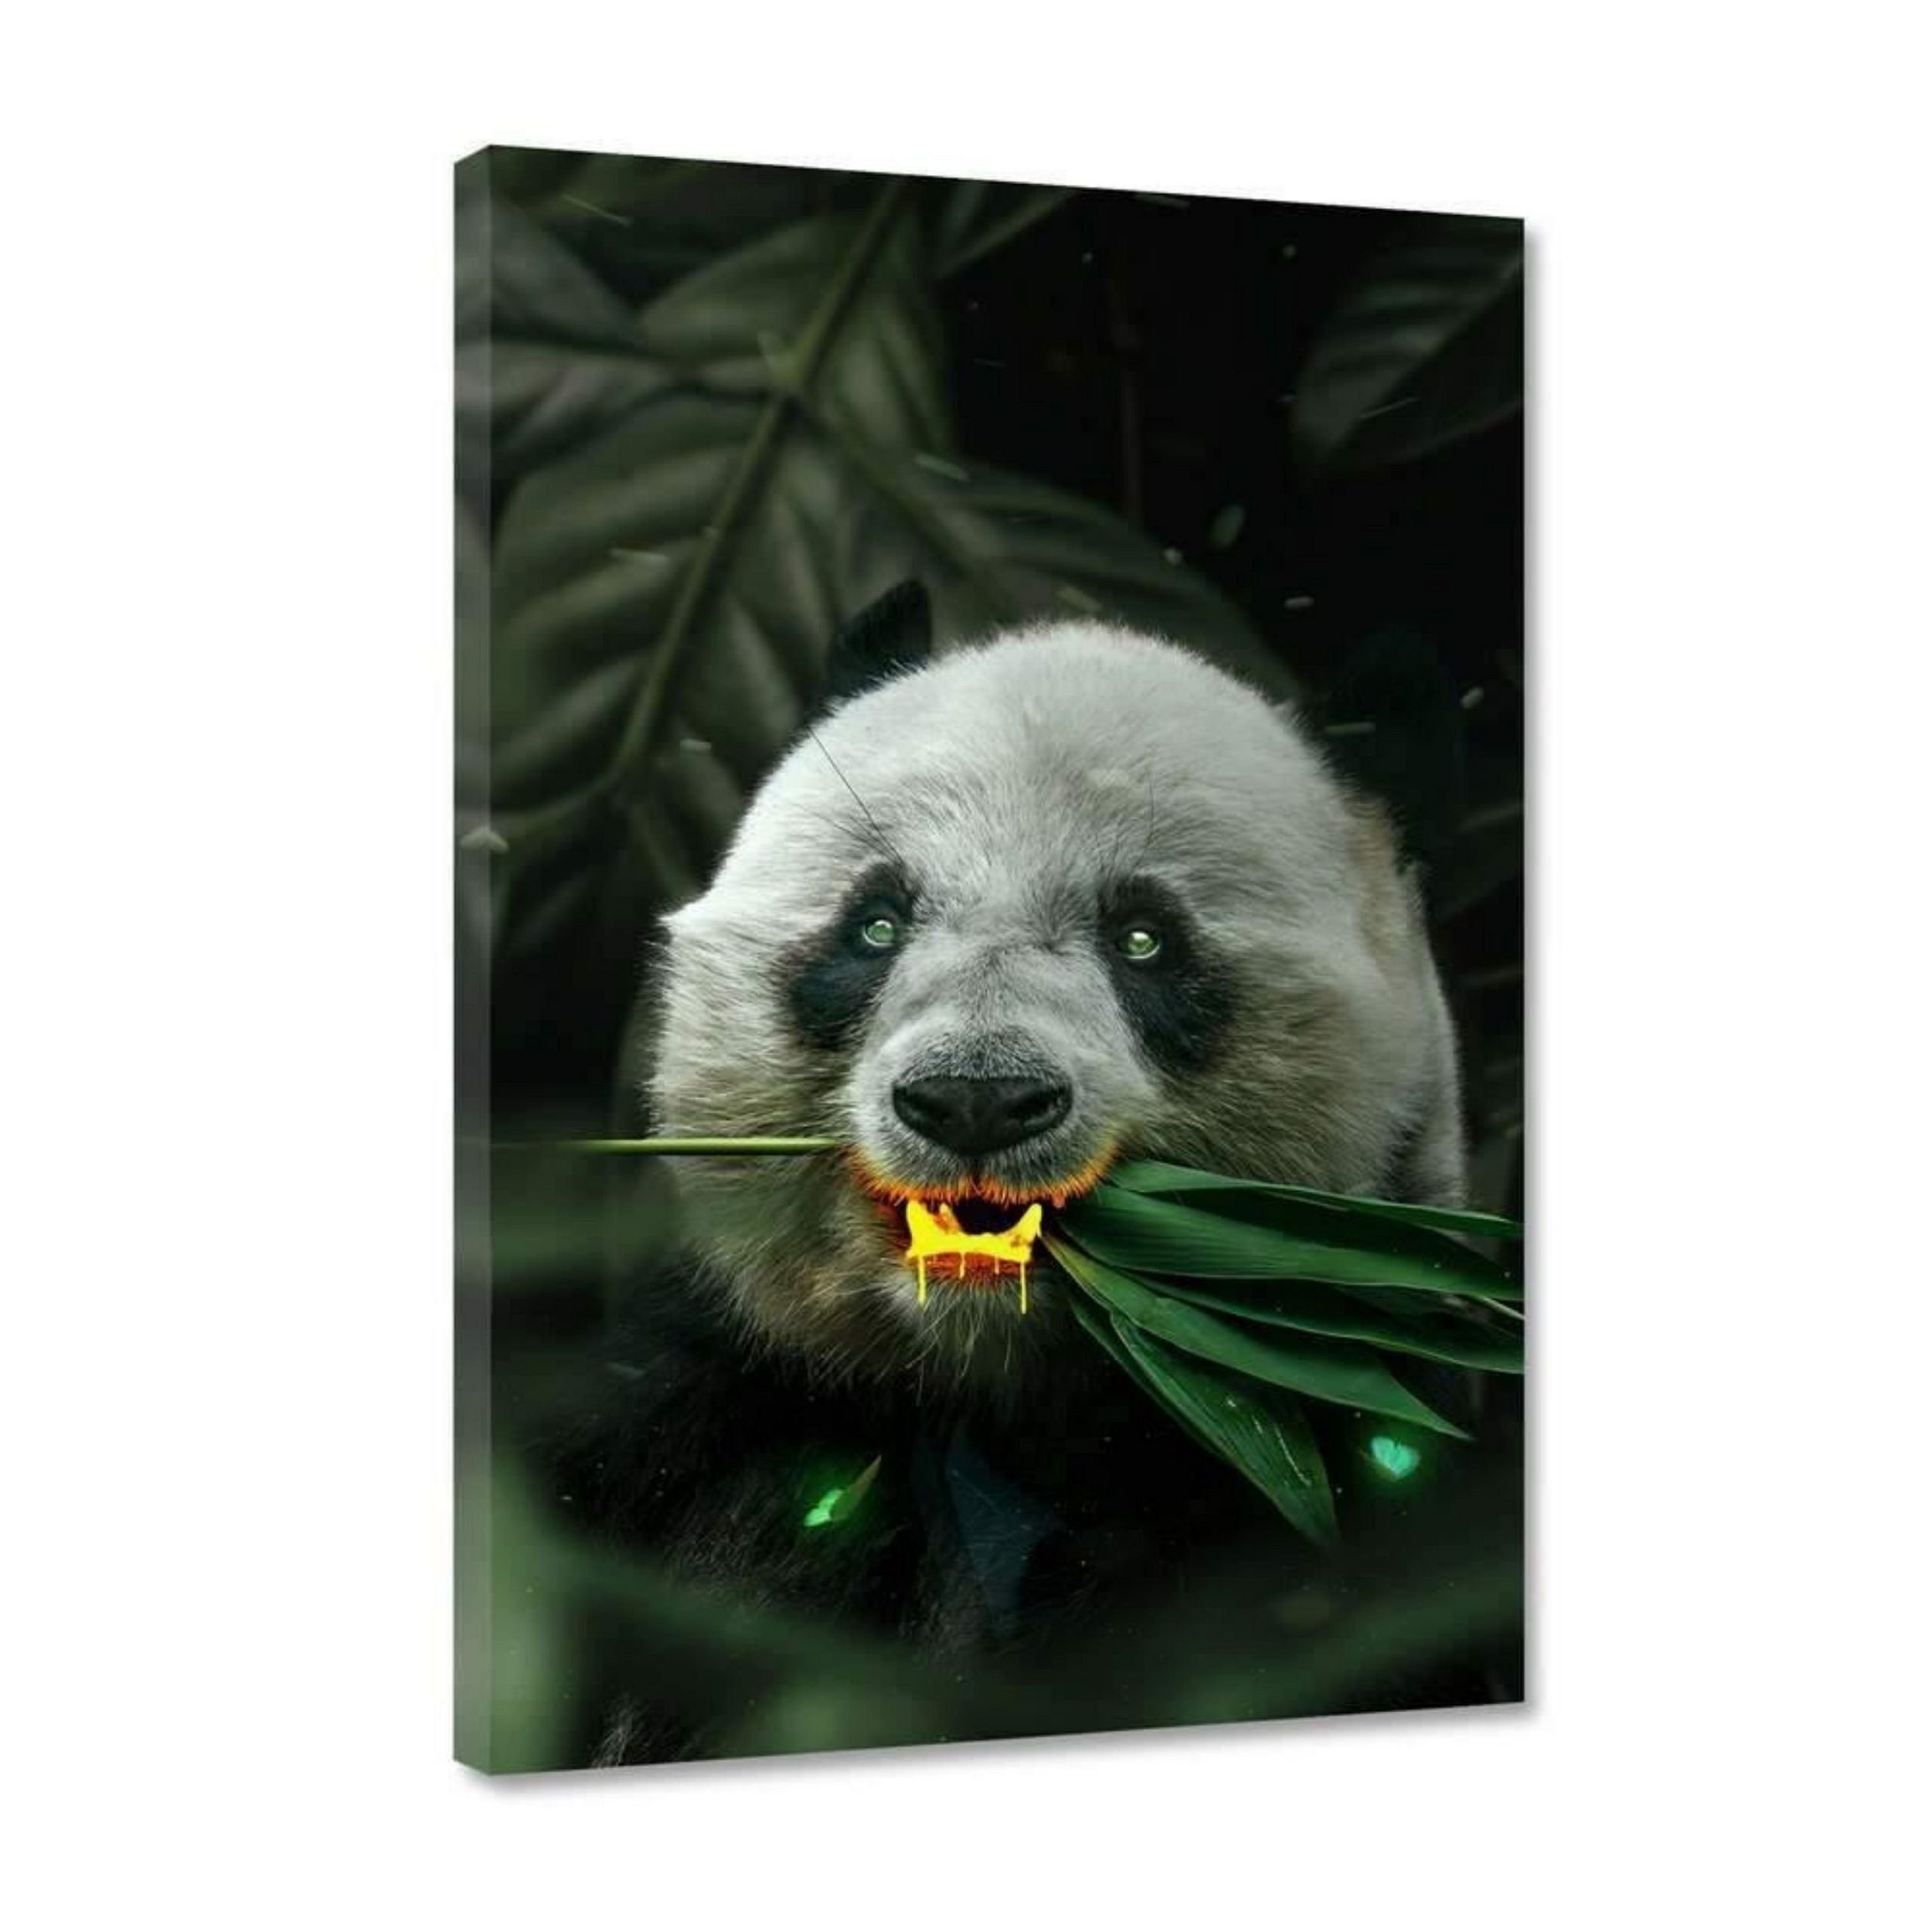 Hustling Sharks Leinwandbild Panda-Bild als XXL Leinwandbild "Goldener Panda" - exklusives Tierbild, in 7 unterschiedlichen Größen verfügbar